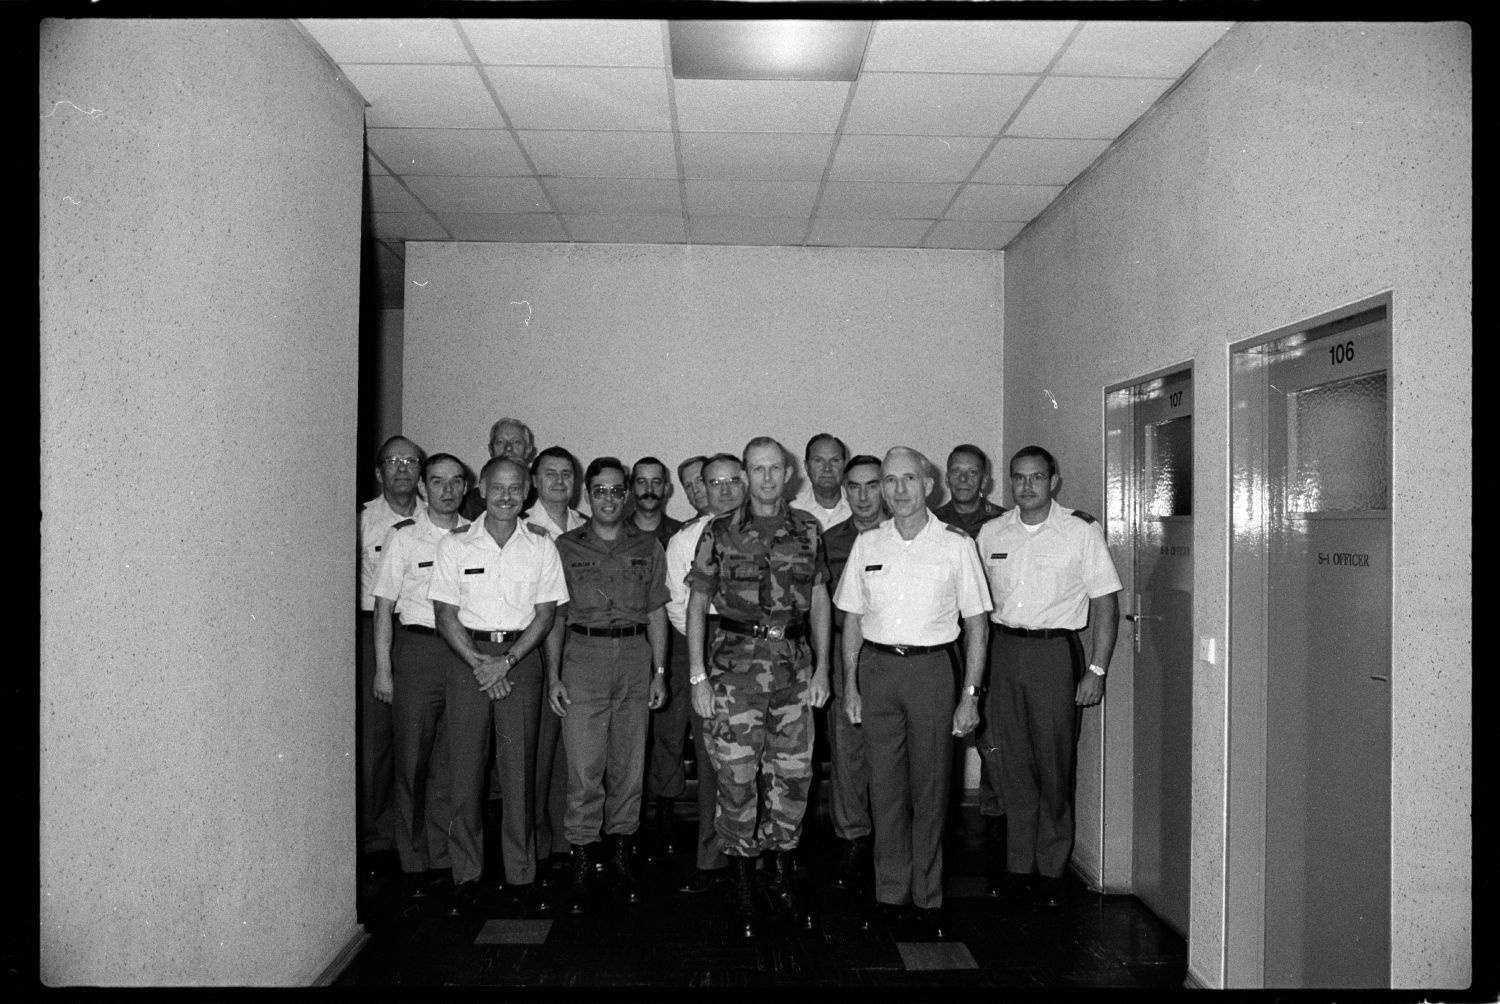 s/w-Fotografie: Besuch von Brigadier General Jack D. Woodall beim 6941st Guard Battalion in Berlin-Lichterfelde (AlliiertenMuseum/U.S. Army Photograph Public Domain Mark)